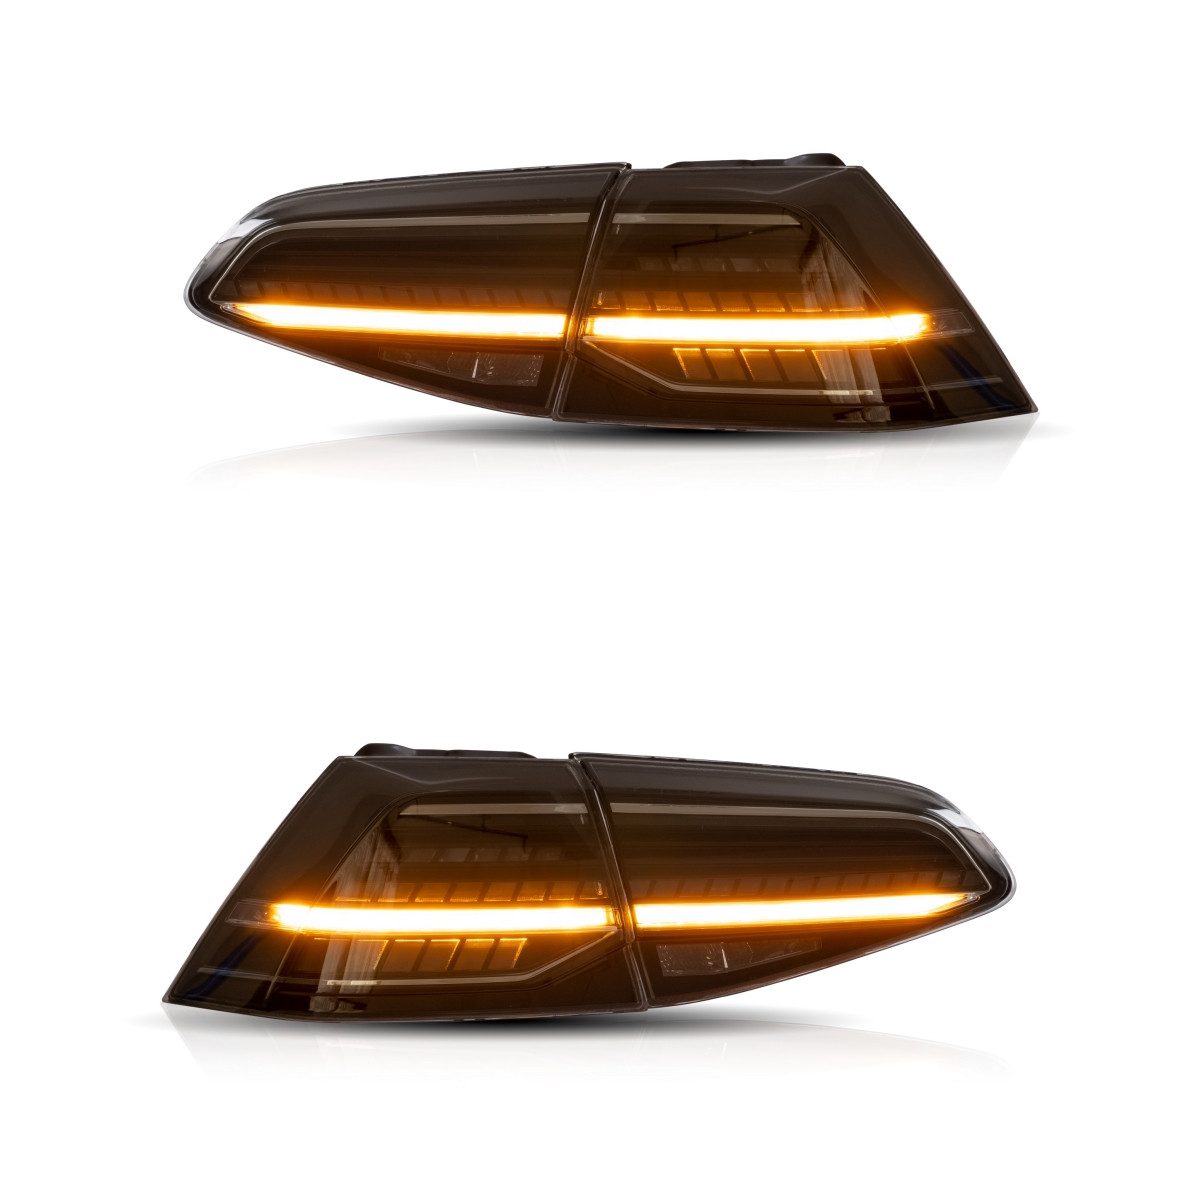 LLCTOOLS Rückleuchte Voll LED Rückleuchten passend für VW Golf 7 2013-2020 Smoke oder rot, LED fest integriert